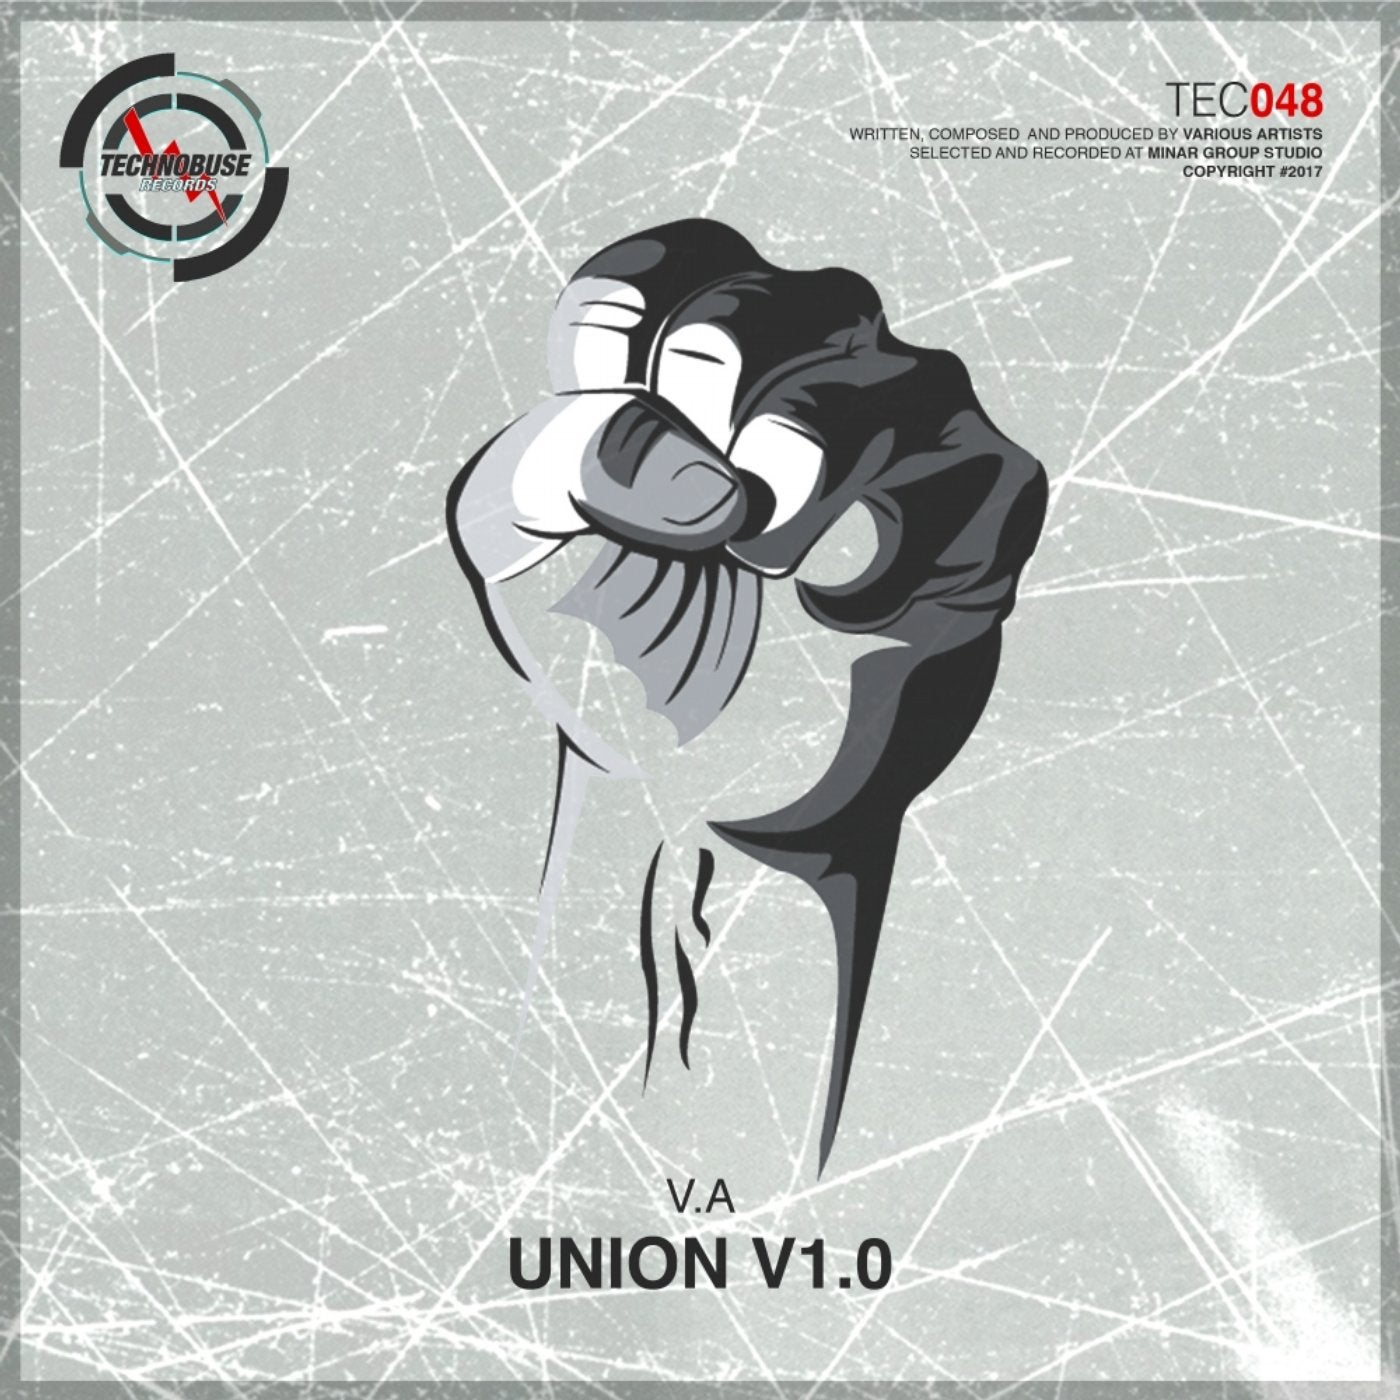 Union V1.0